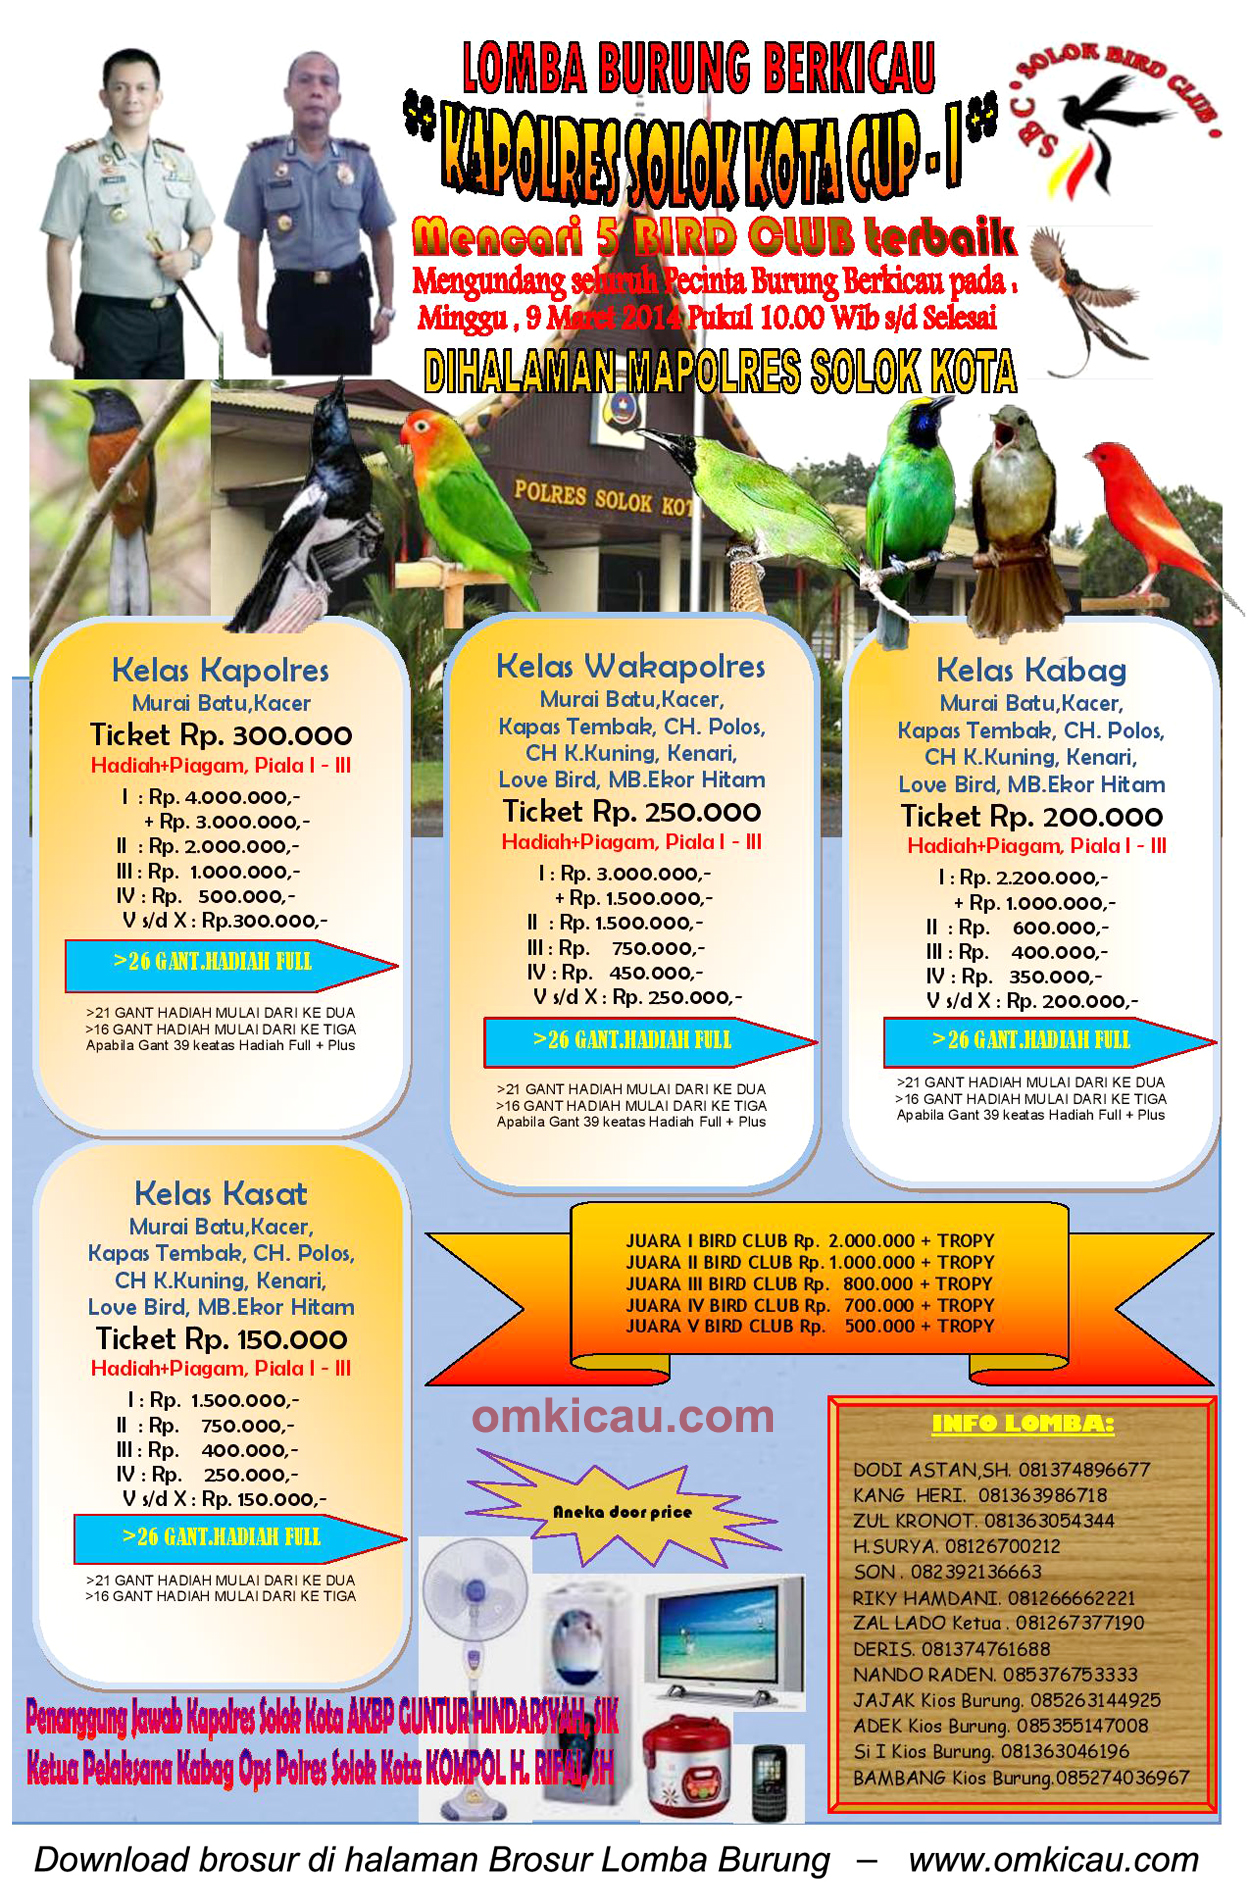 Brosur Lomba Burung Berkicau Kapolres Solok Kota Cup I, Solok, 9 Maret 2014